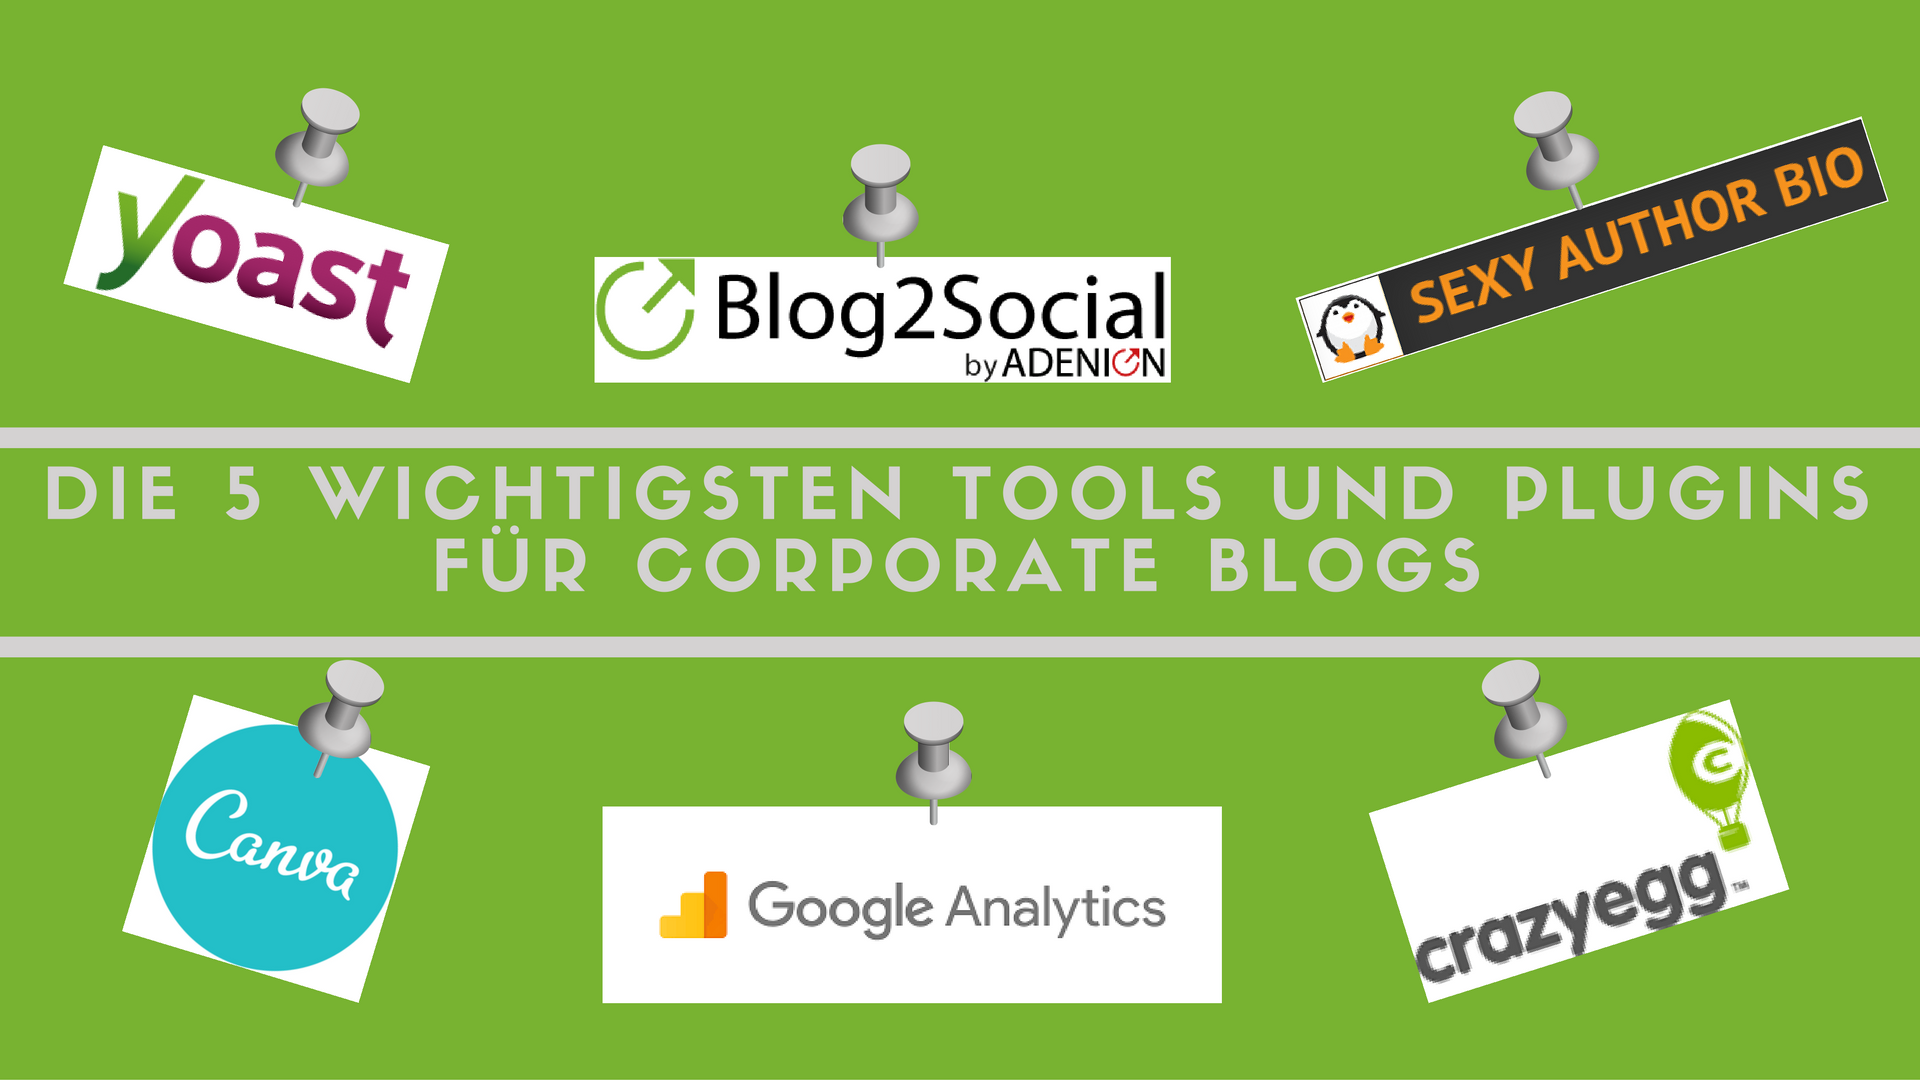 Die 5 wichtigsten Tools und Plugins für Corporate Blogs